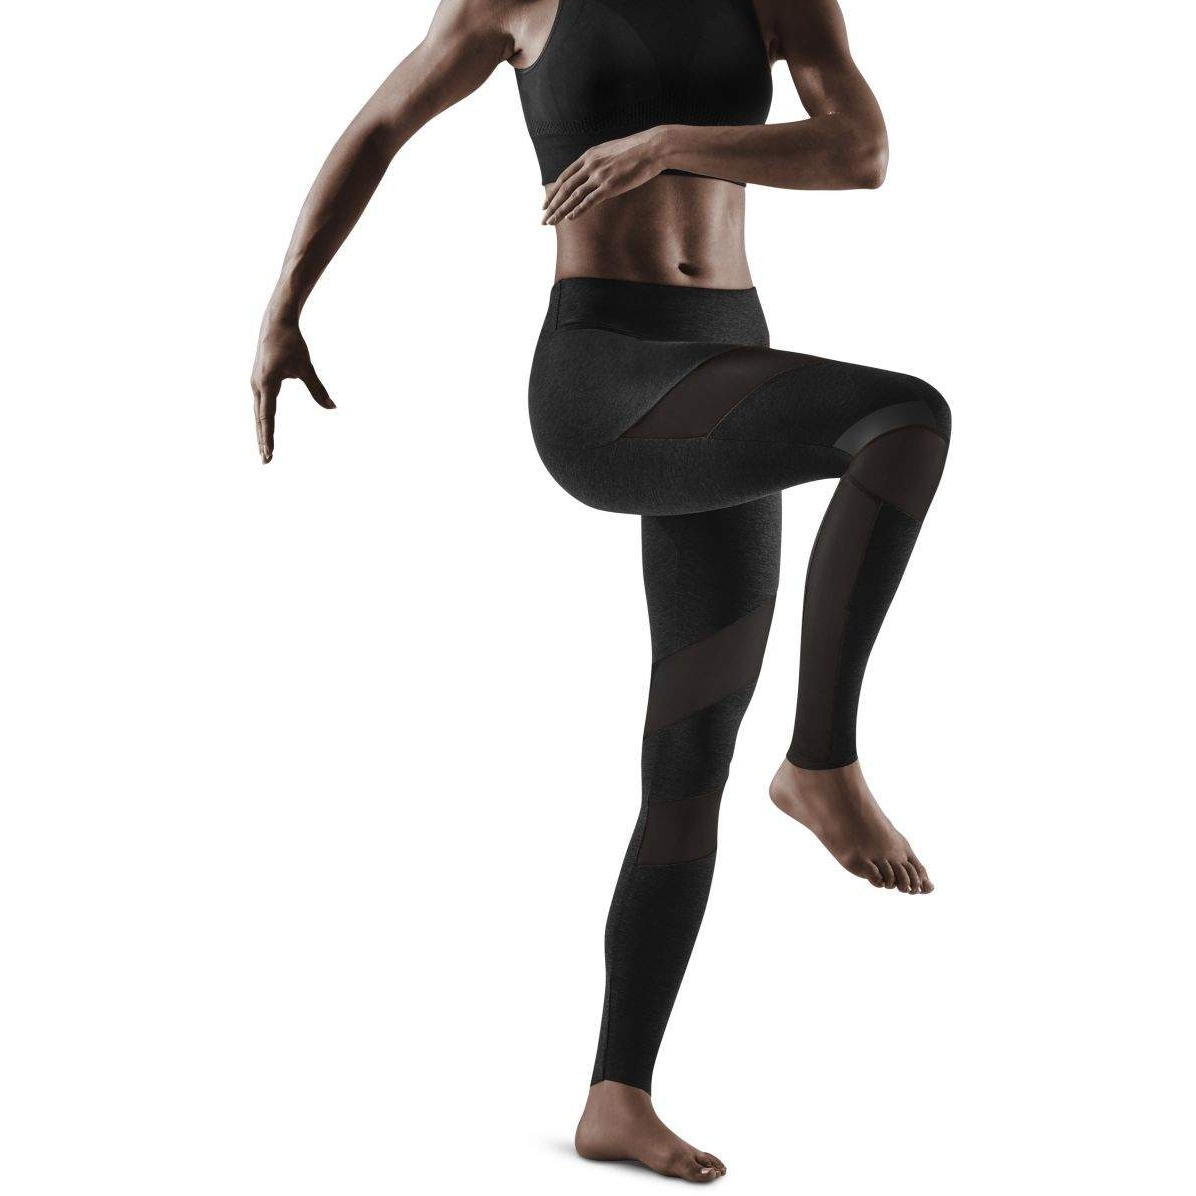 Produktbild von CEP Training Tights Damen - schwarz/schwarz